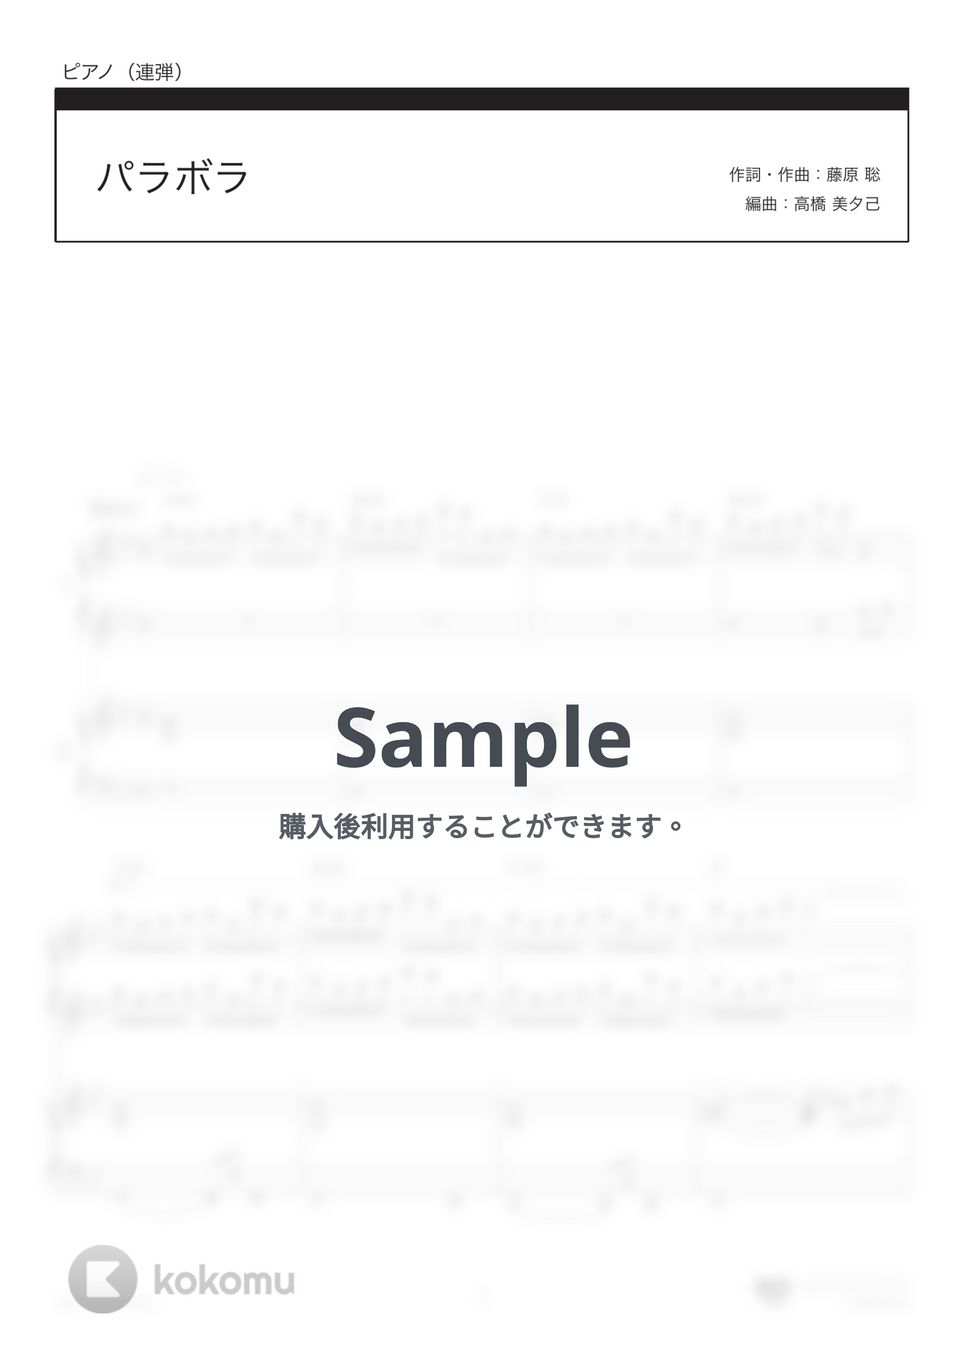 Official髭男dism - パラボラ (「カルピスウォーター」CMソング) by 楽譜仕事人_高橋美夕己